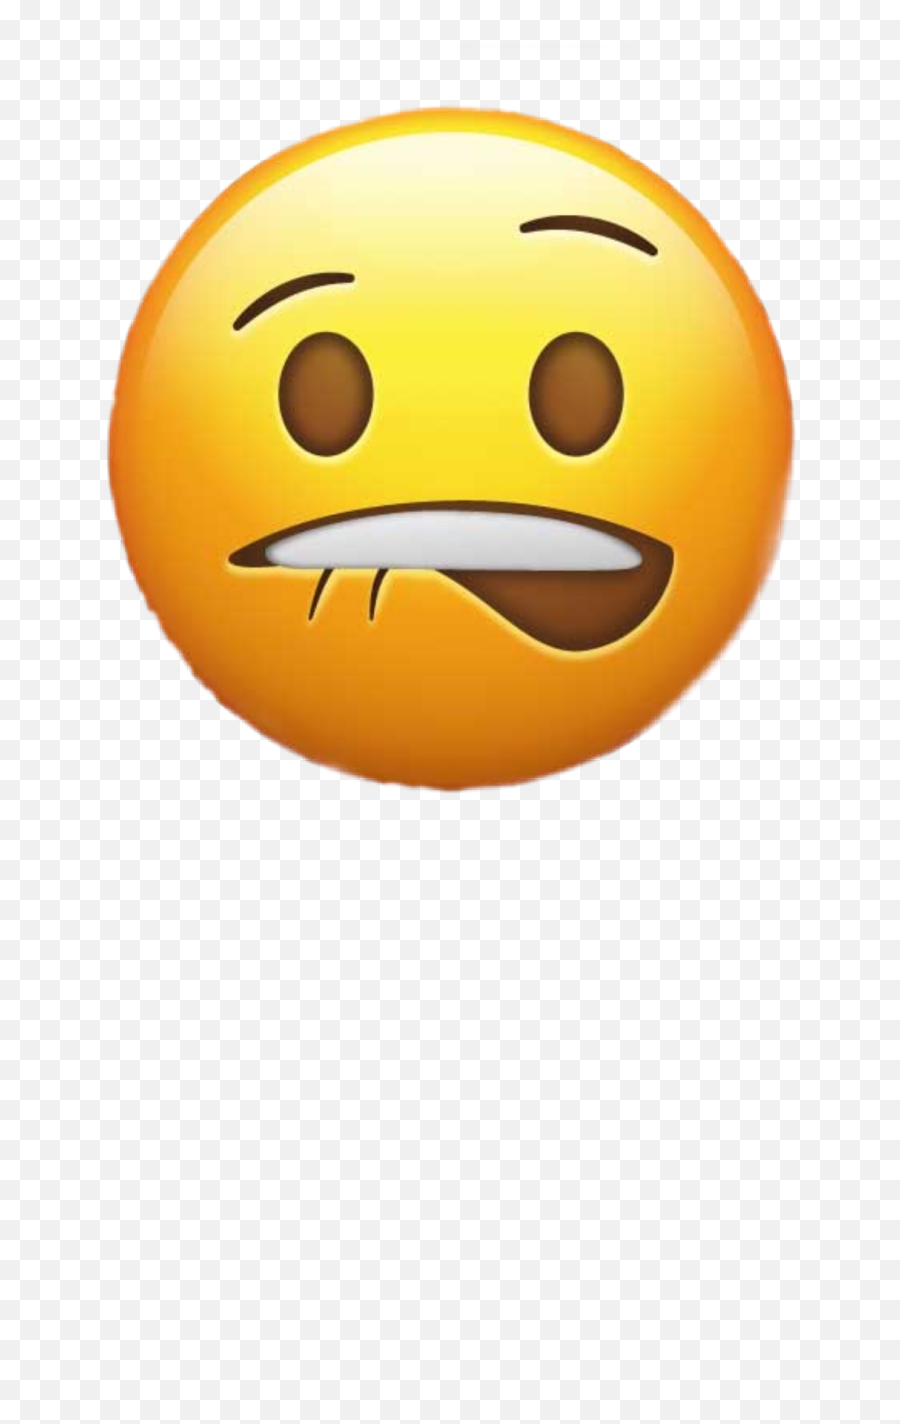 Discover Trending Emoji Stickers Picsart - Lip Bite Emoji Png,Como Hacer Emojis Con El Atl